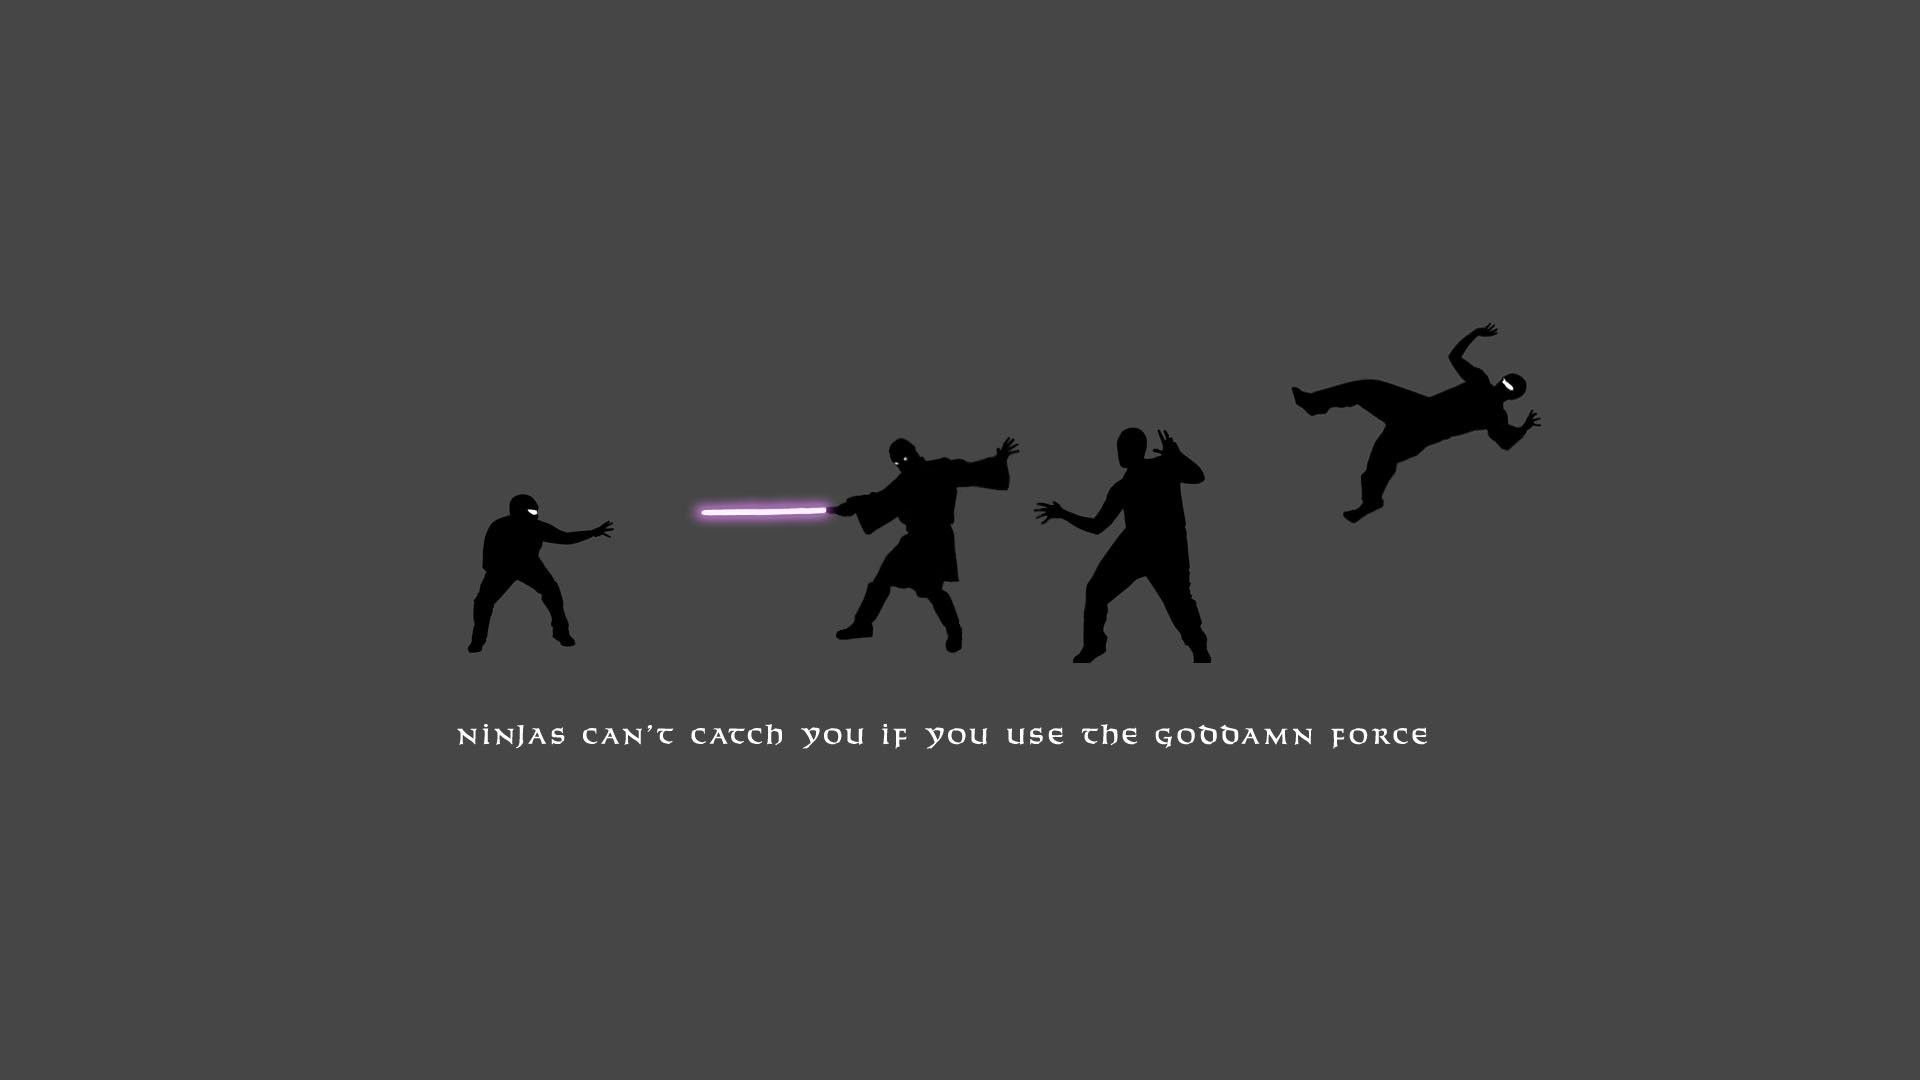 Star Wars Lightsaber Duel Wallpaper .pavbca.com